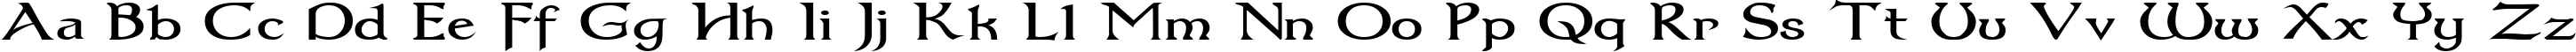 Пример написания английского алфавита шрифтом Dumbledor 3 Wide